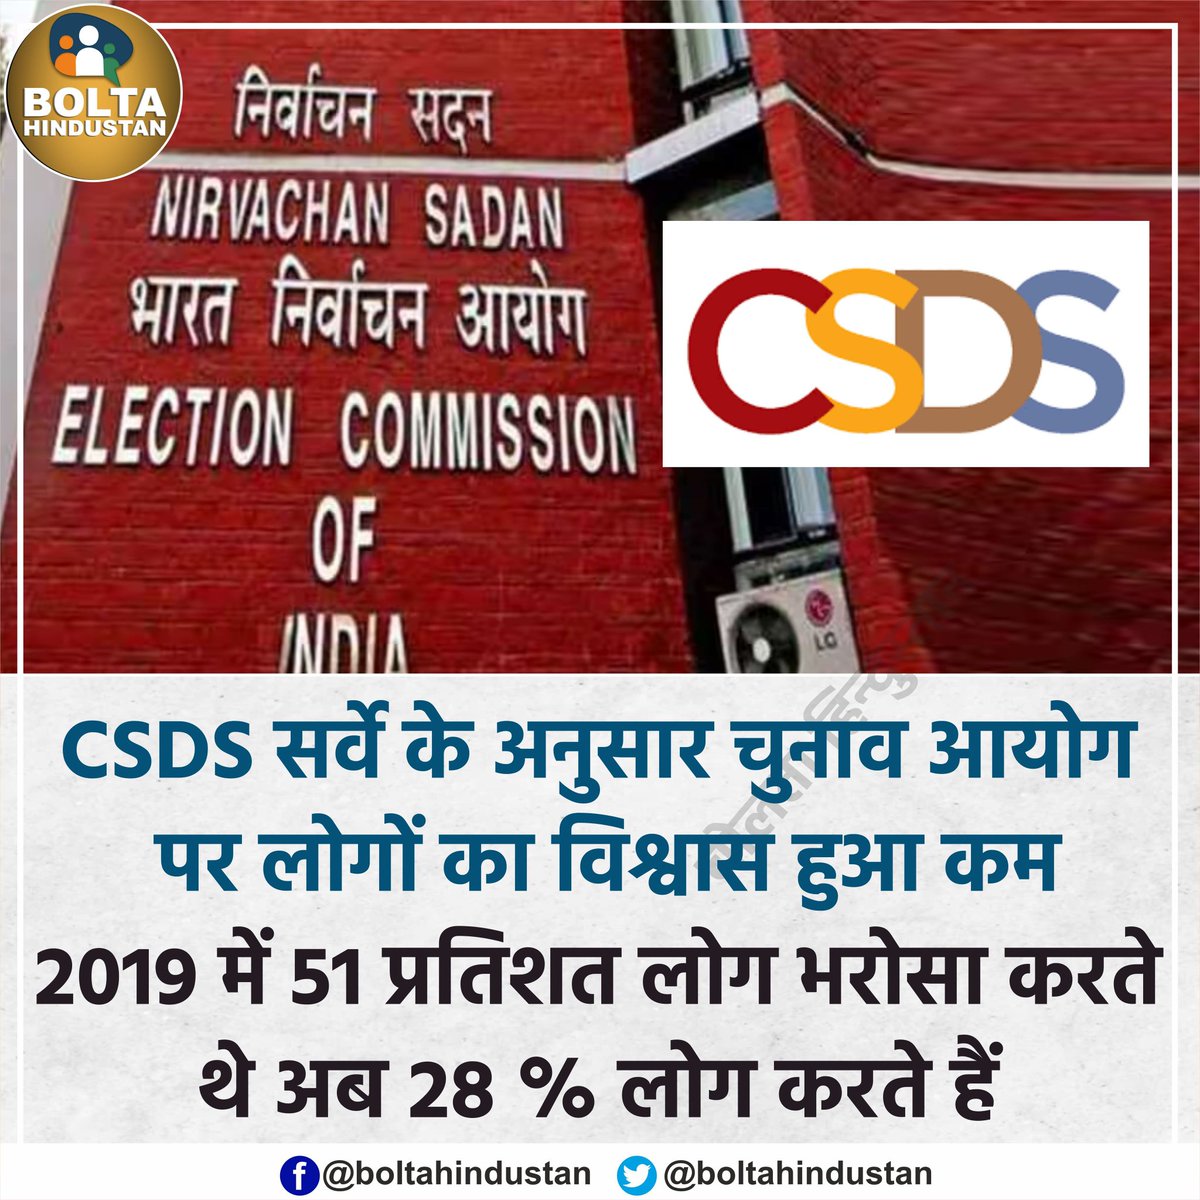 सिर्फ 28% लोग 'चुनाव आयोग' पर भरोसा करते हैं : CSDS सर्वे !

क्या ये सच हैं???